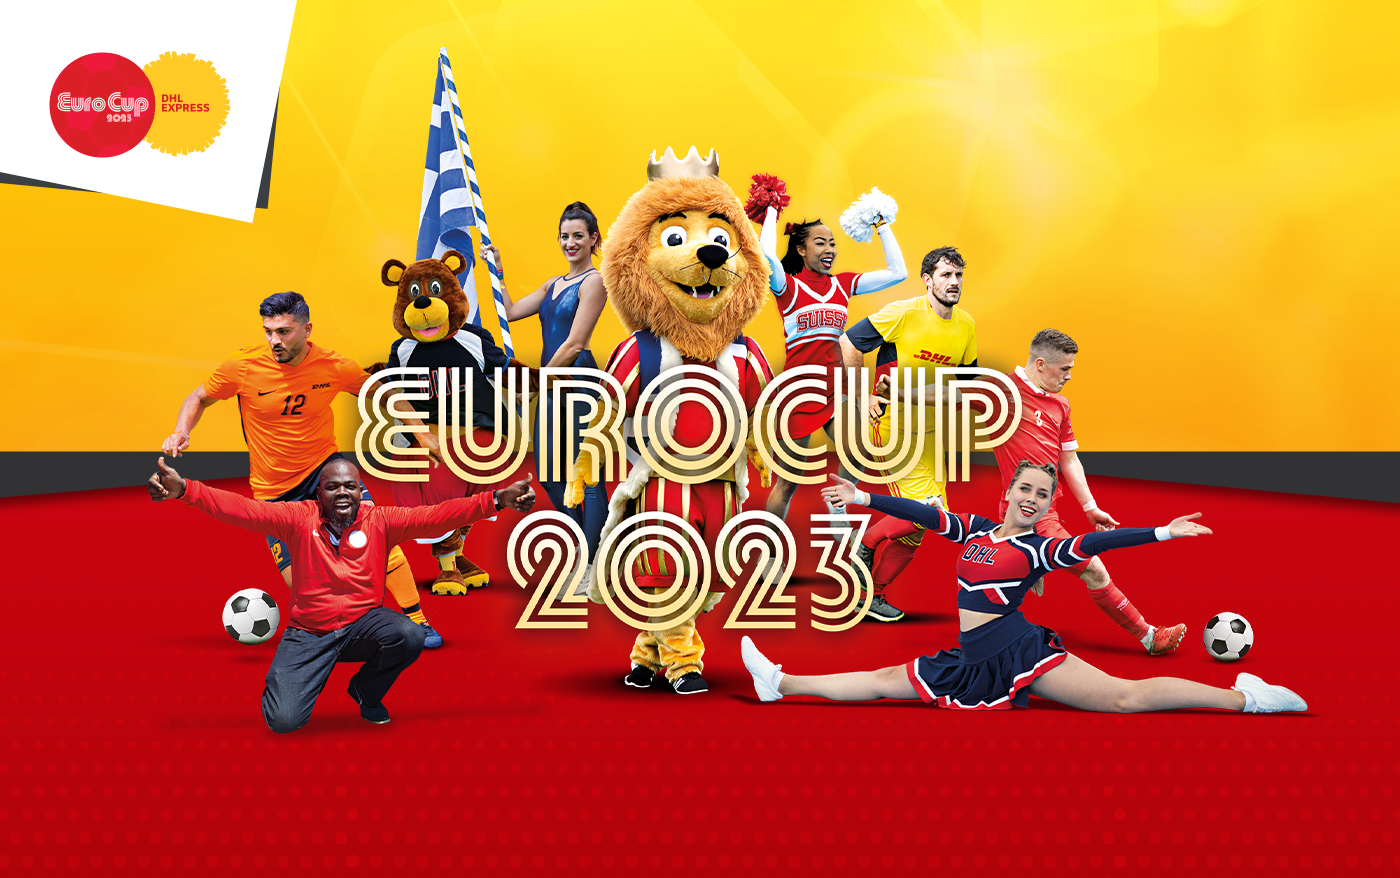 Eurocup 2023 DHL Express